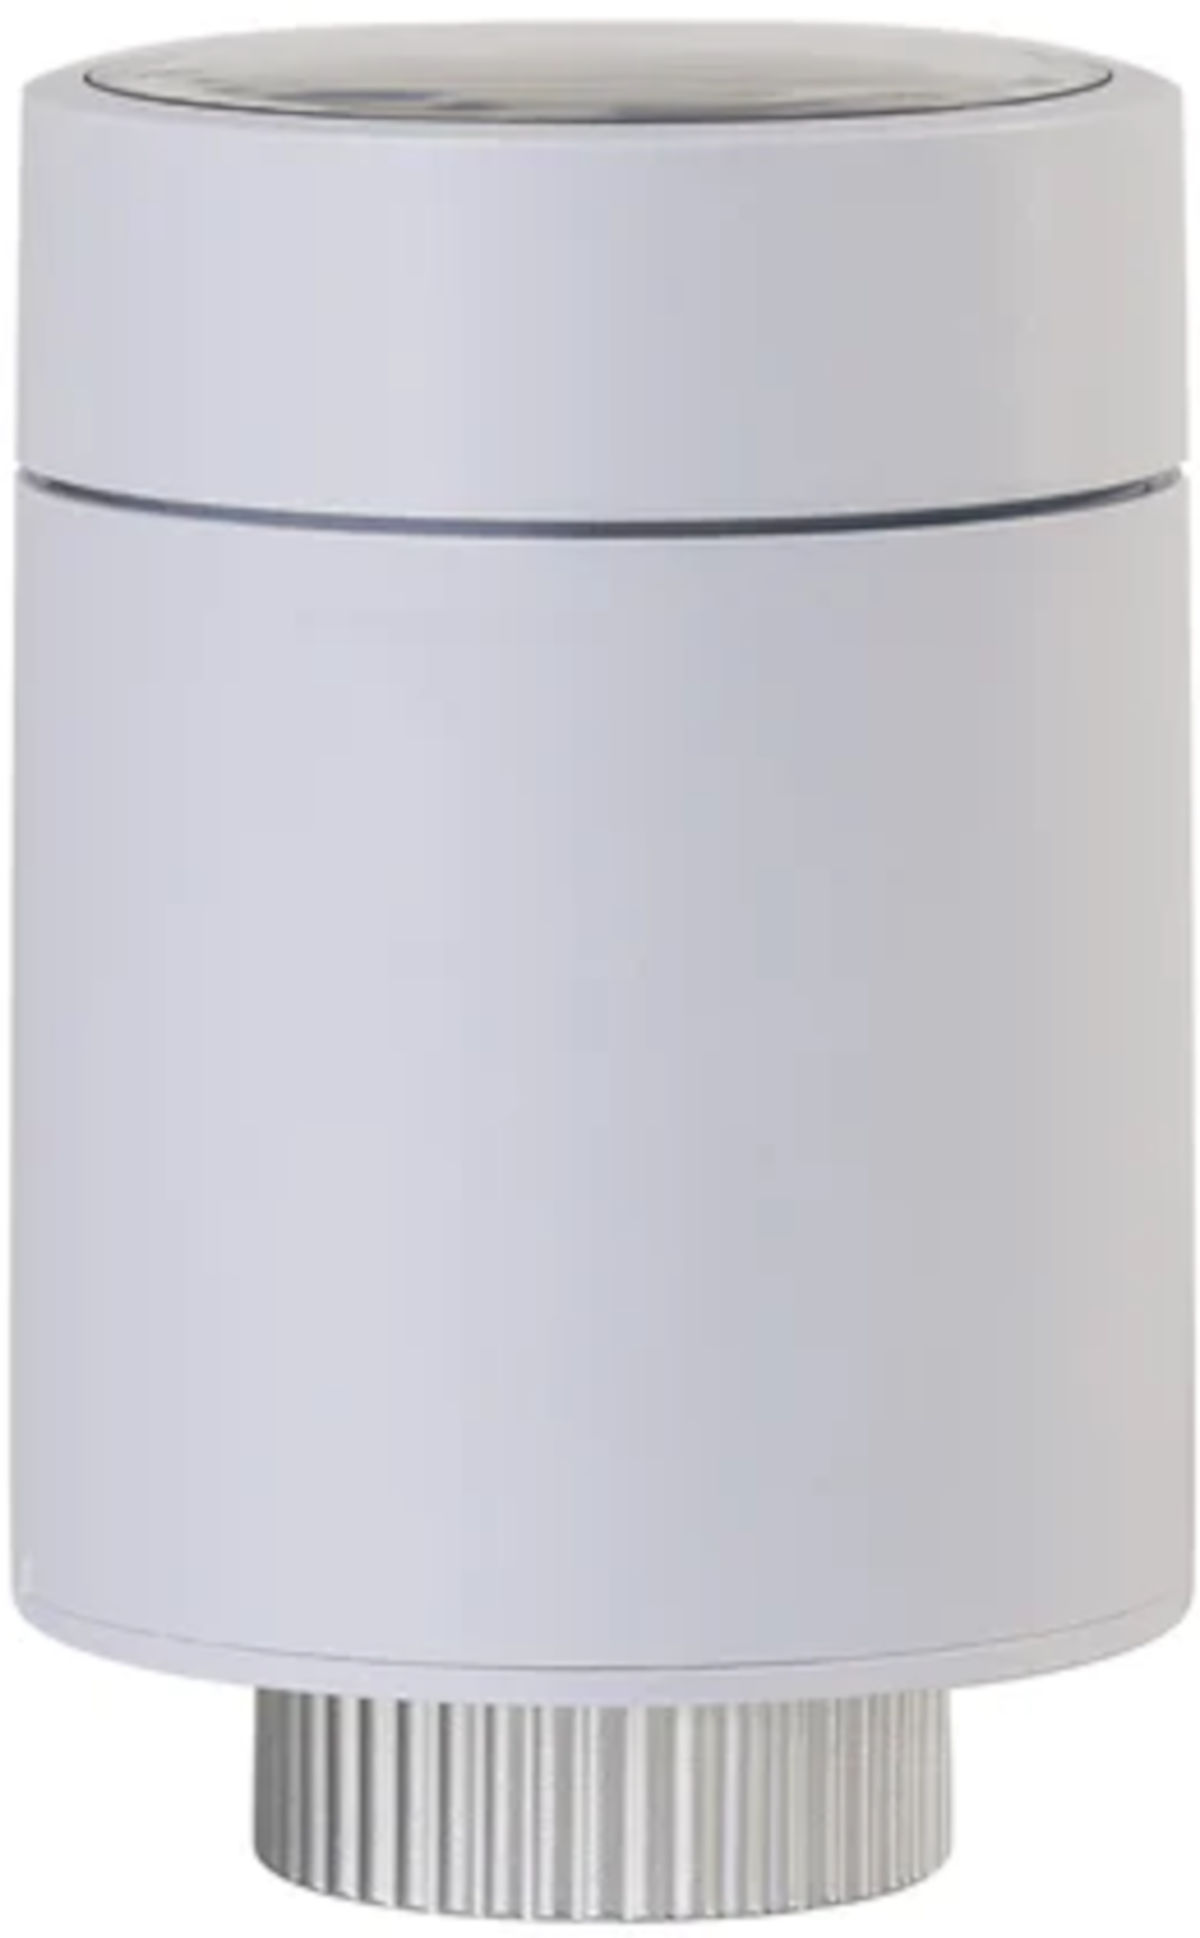 Wesmartify Smart Home Heizkörperthermostat Premium, Seitenansicht, vor weißem Hintergrund